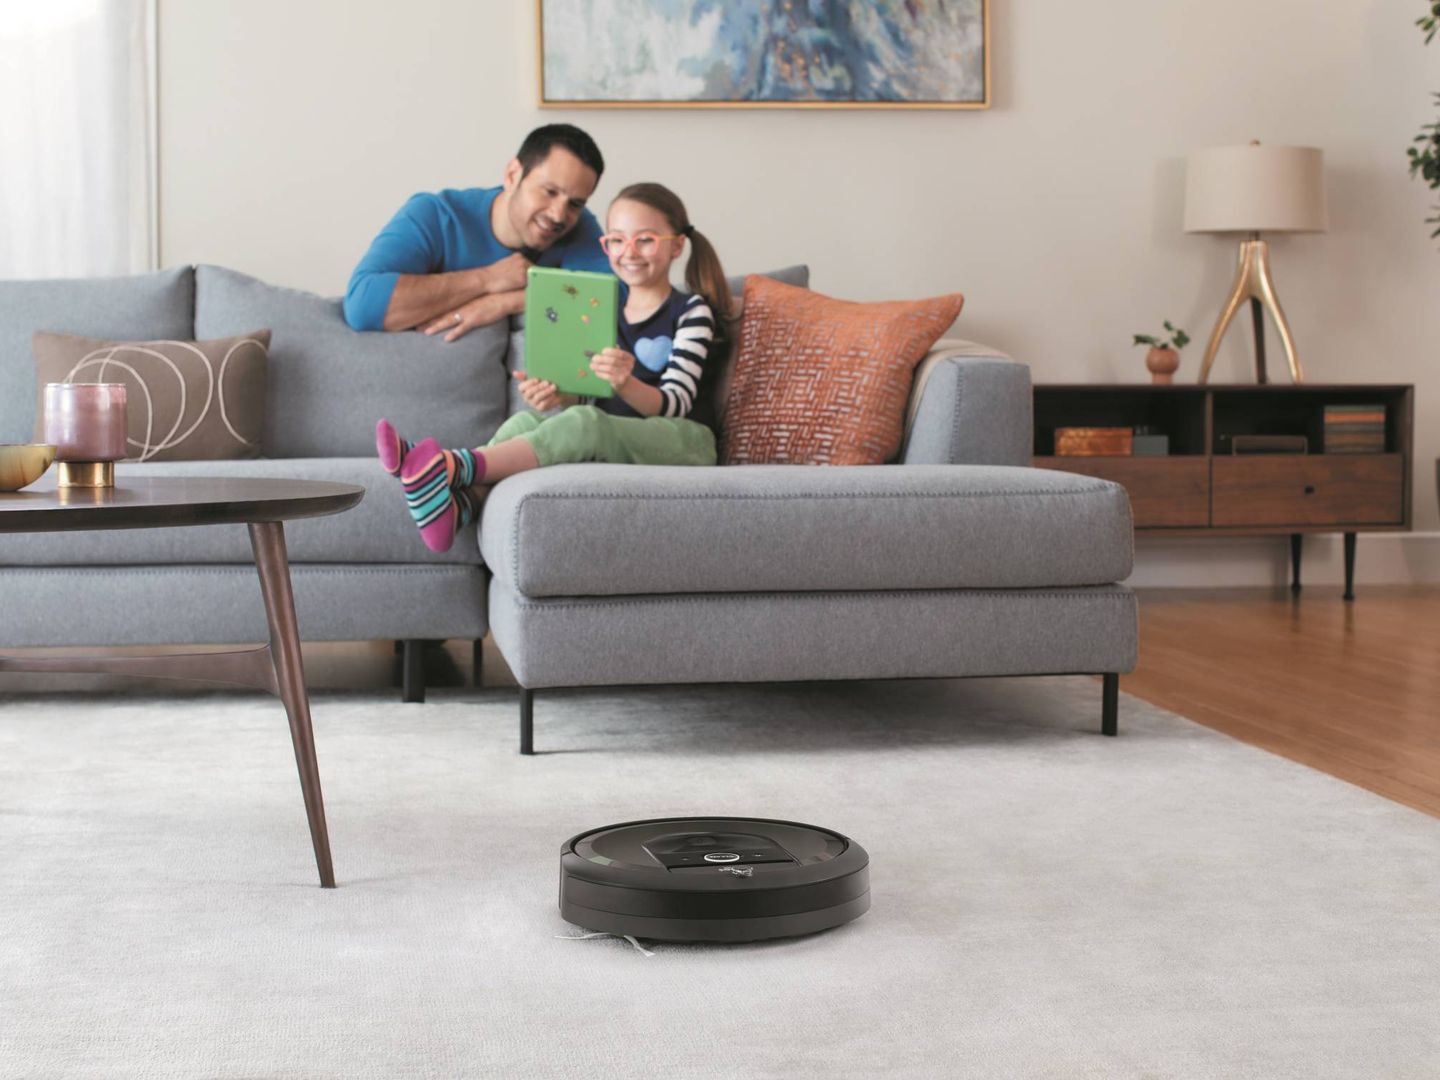 Una pobre Roomba, olvidada en mitad del salón mientras la familia se divierte con una 'tablet' de 2014.